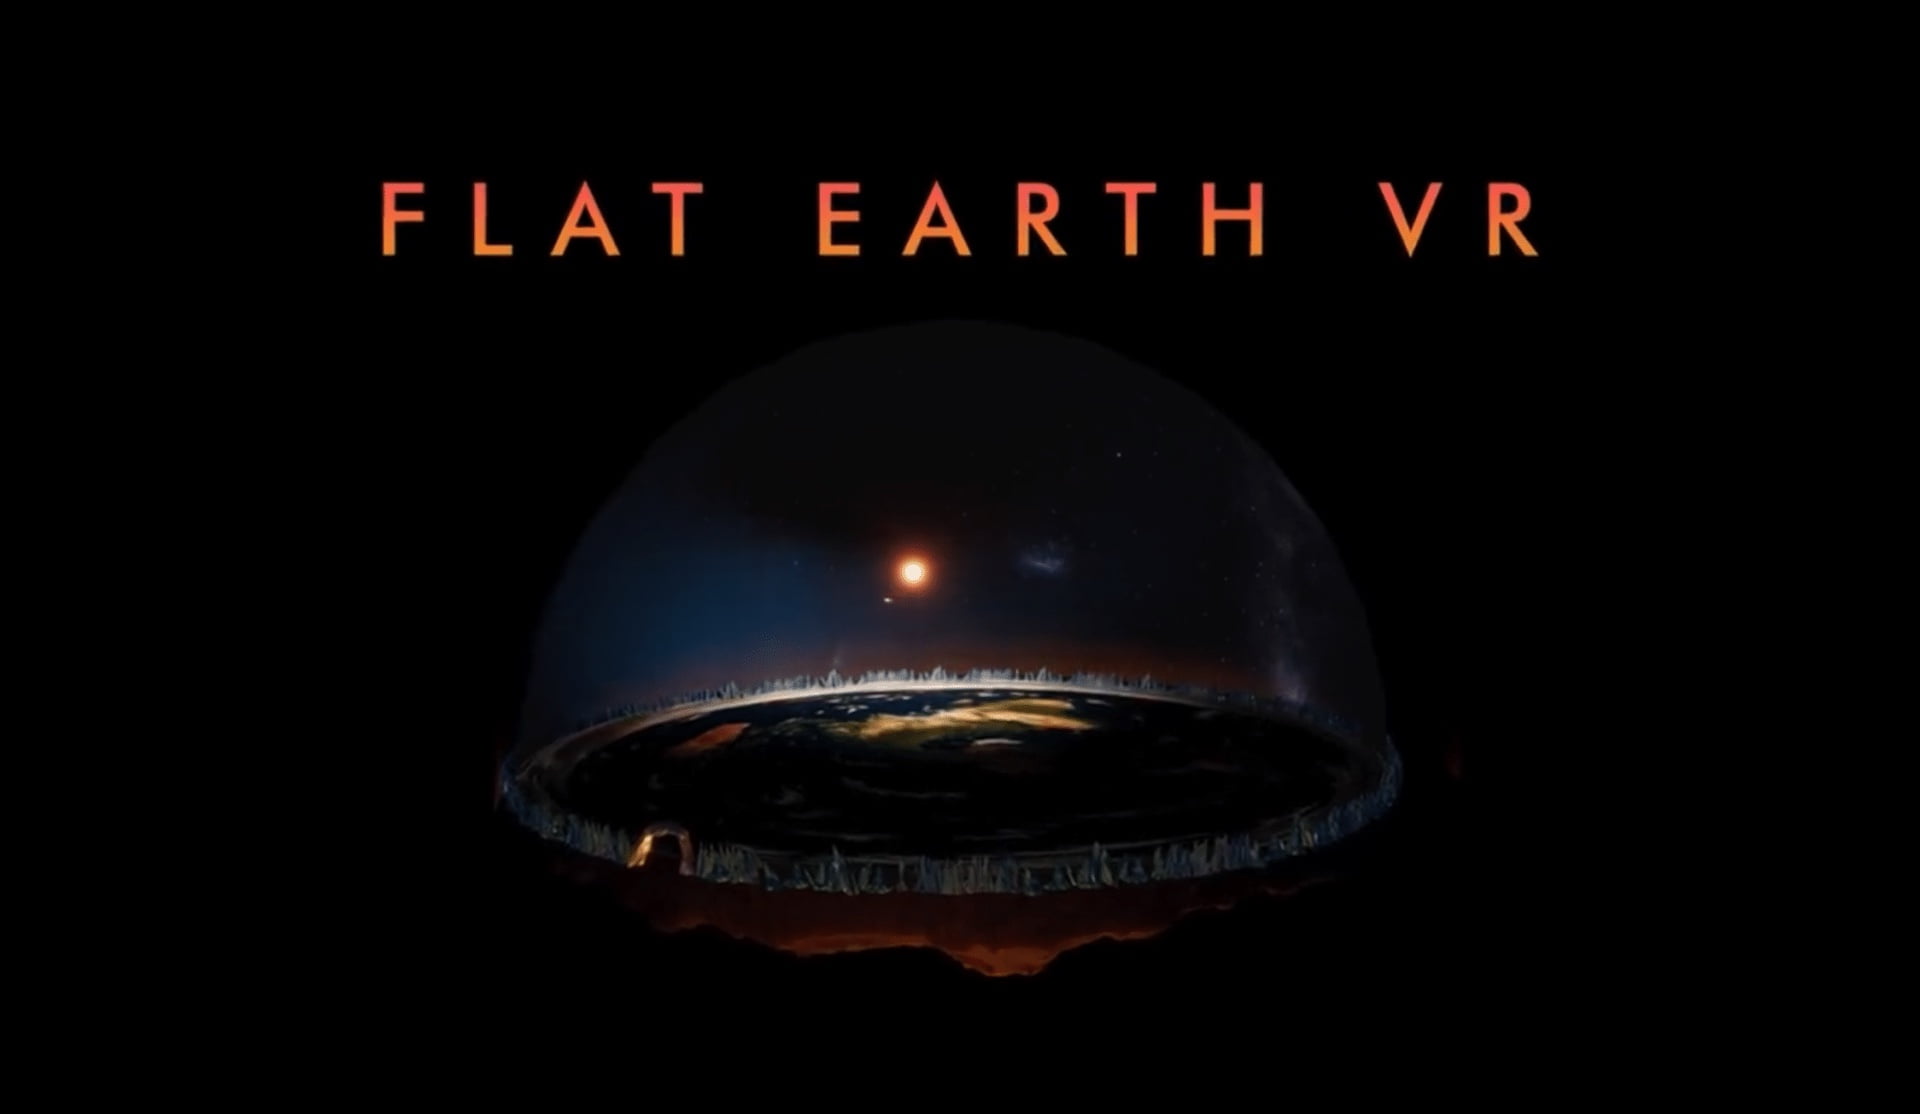 Das Plakat des VR-Spiels Flat Earth VR zeigt die Erde als flache Scheibe.